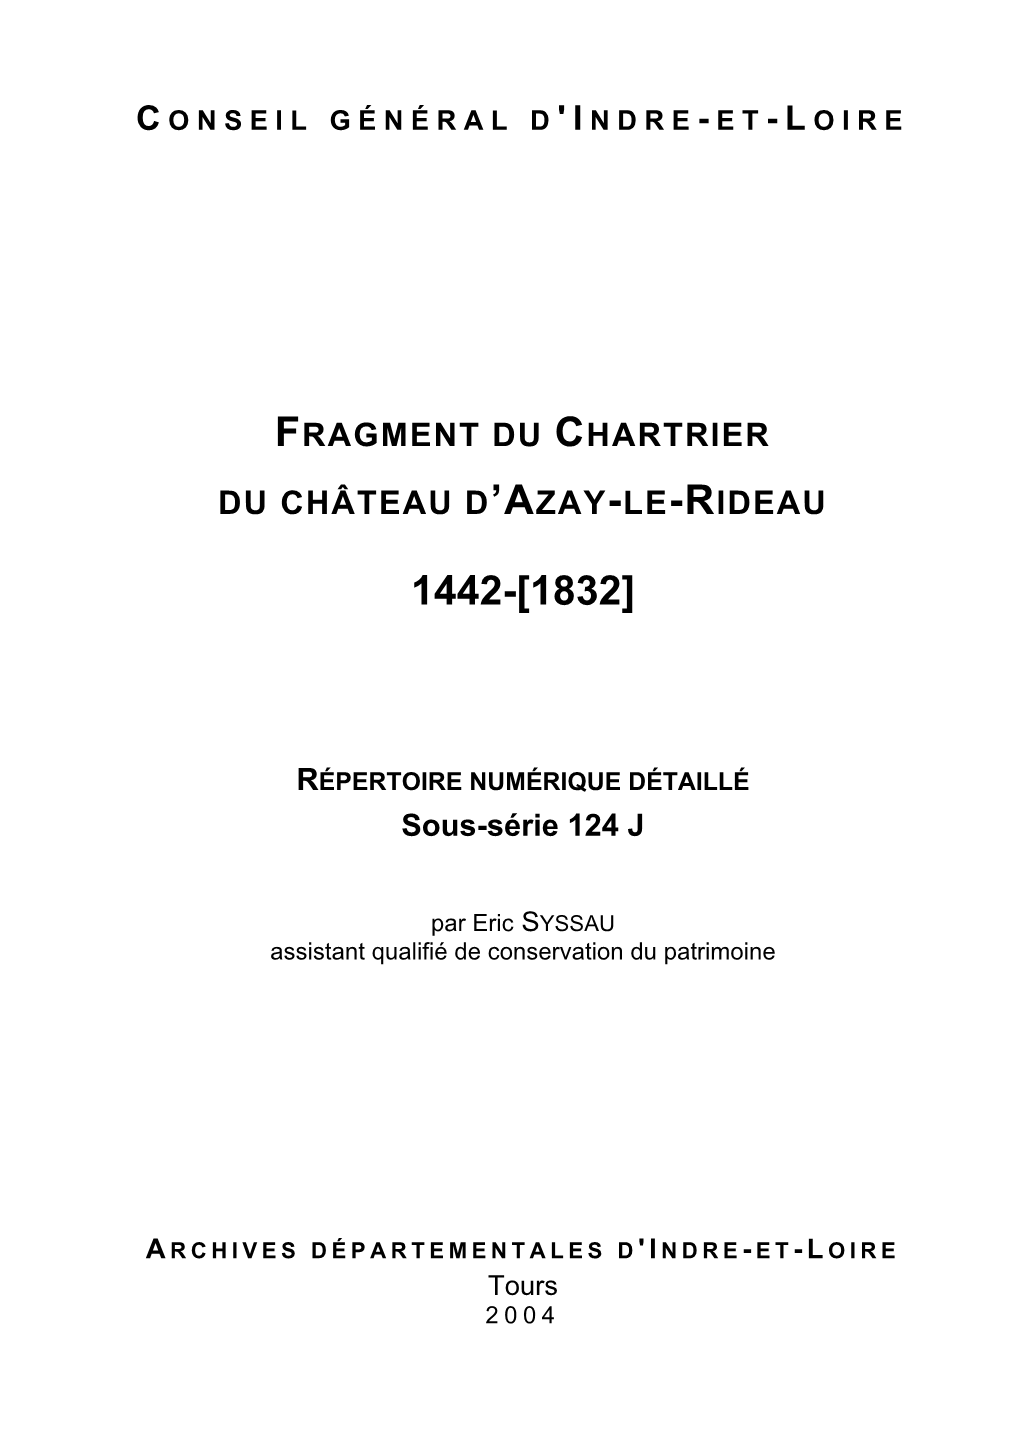 Fragment Du Chartrier Du Château D'azay-Le-Rideau